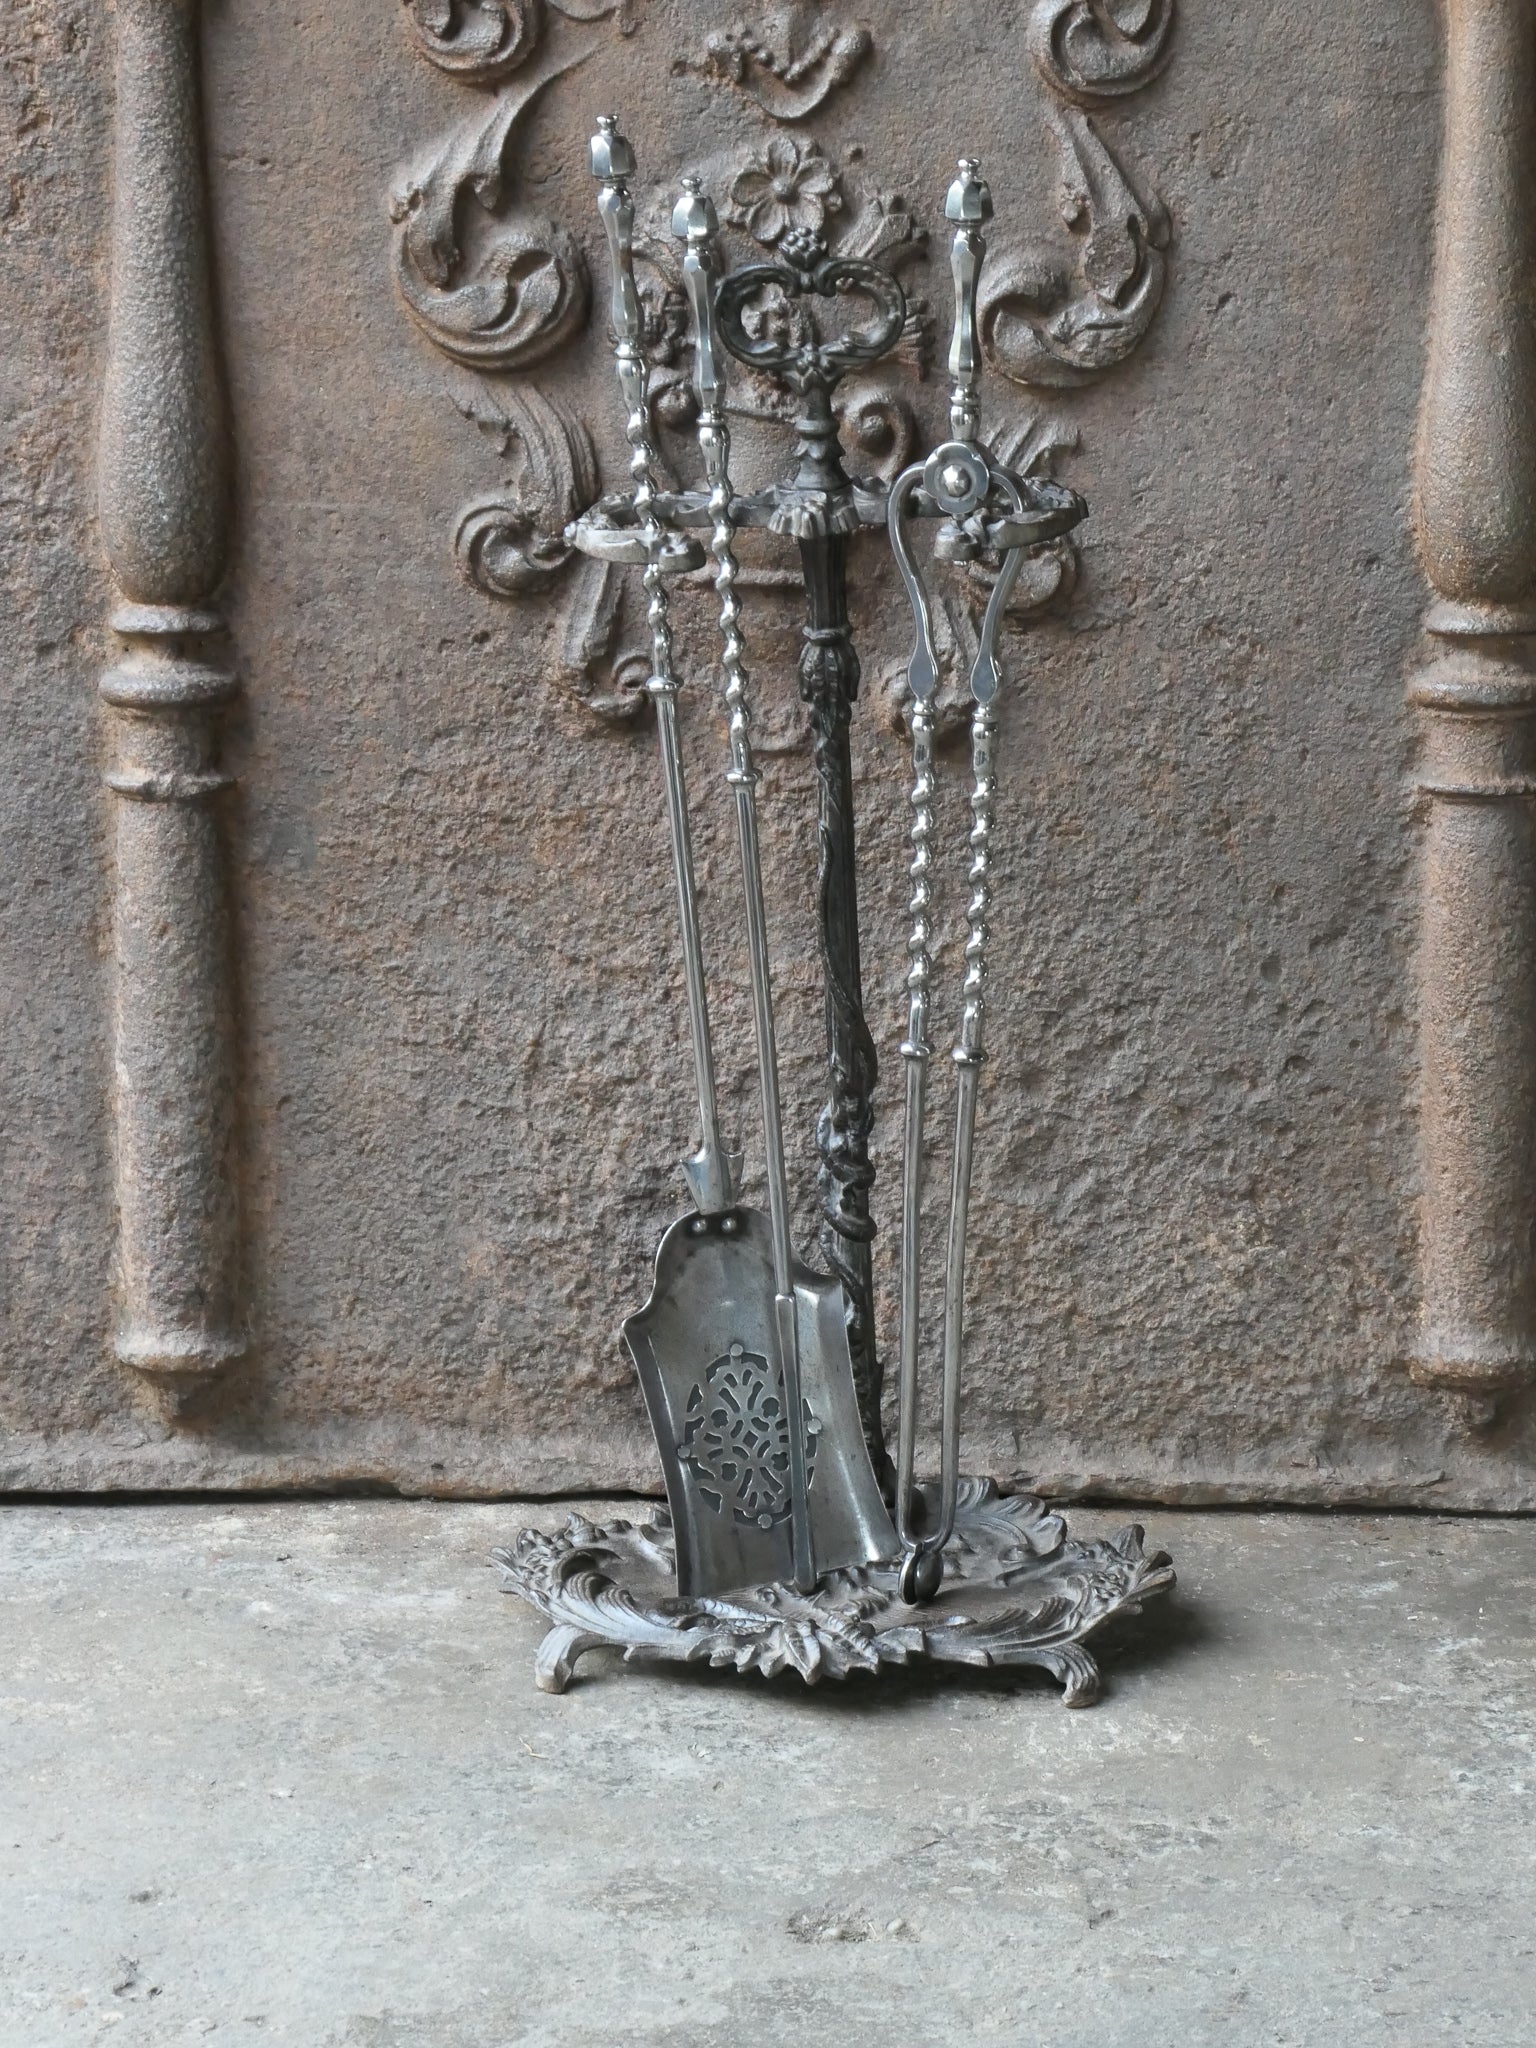 Ensemble d'outils de cheminée géorgien anglais du 18e - 19e siècle. Le set d'outils comprend une pince, une pelle, un tisonnier et un support. Le support est en fonte et les outils sont en acier poli. L'ensemble est en bon état et peut être utilisé